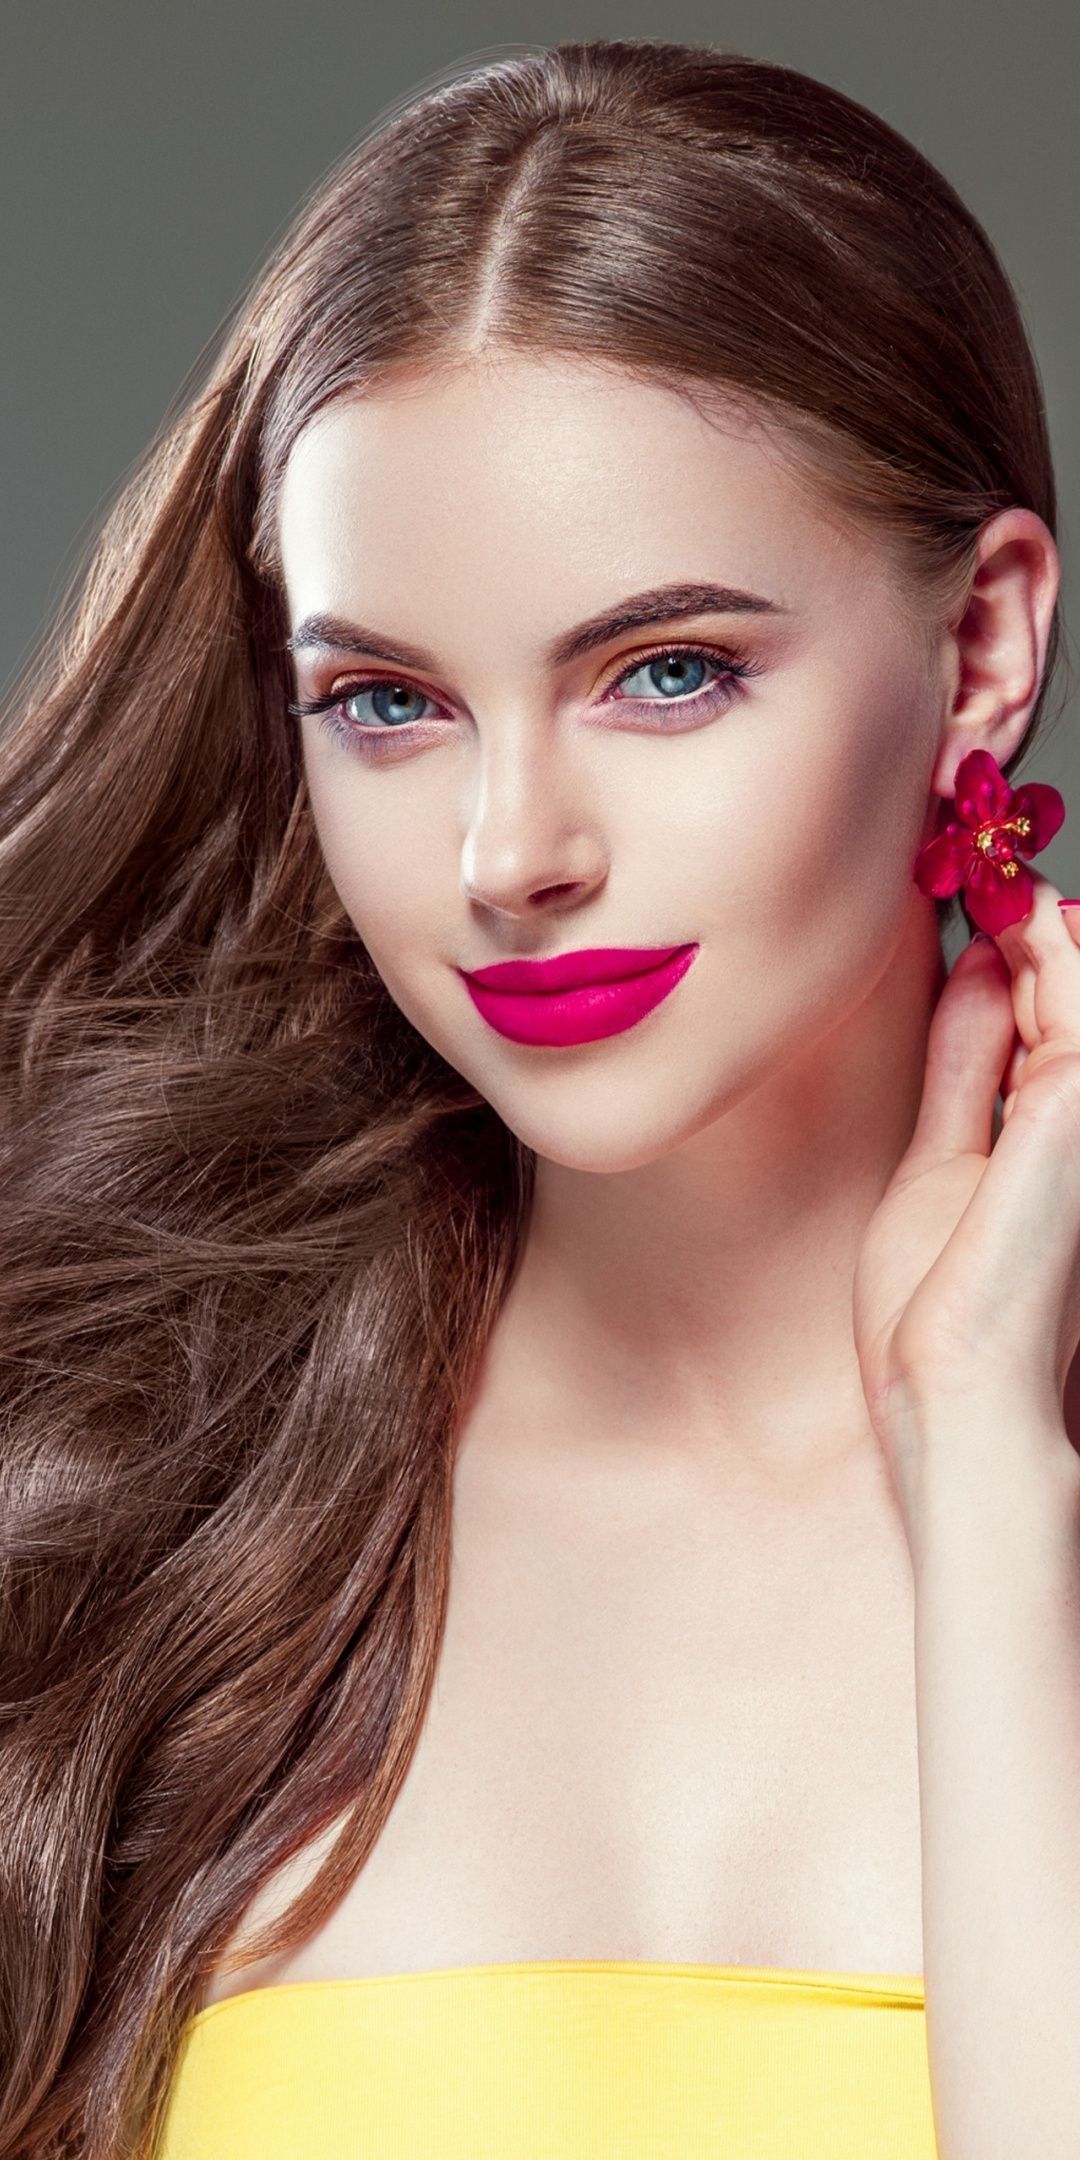 Free download Women Face Portrait Beauty Model wallpaper Gallery